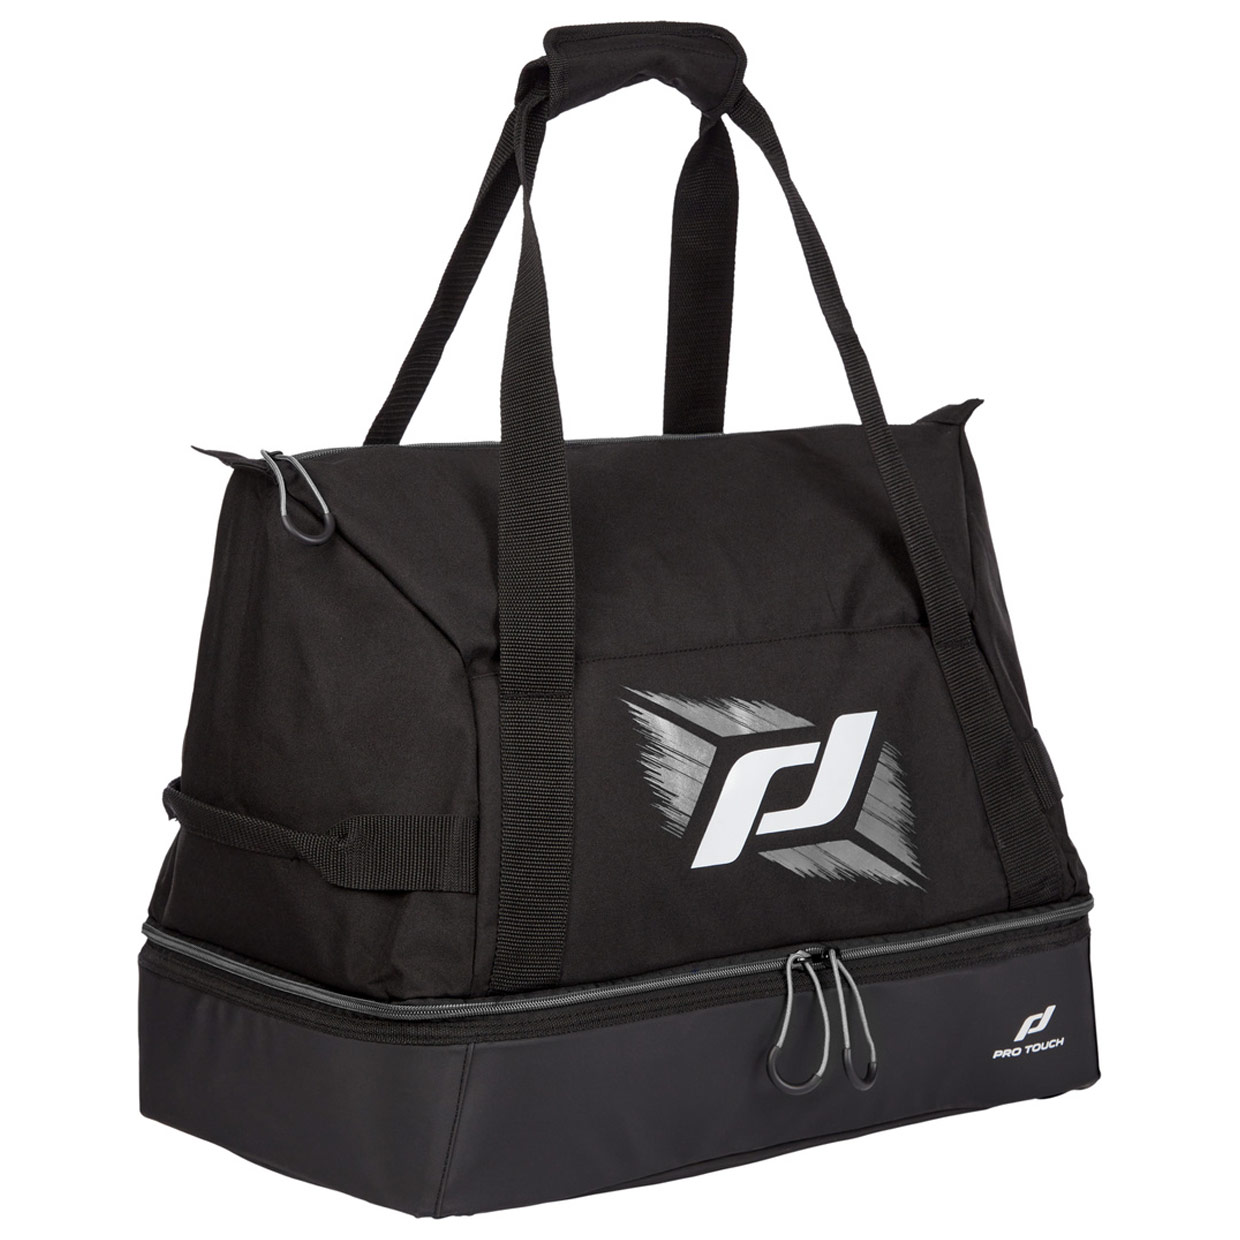 Sporttasche Teambag Force Pro M 50 Liter